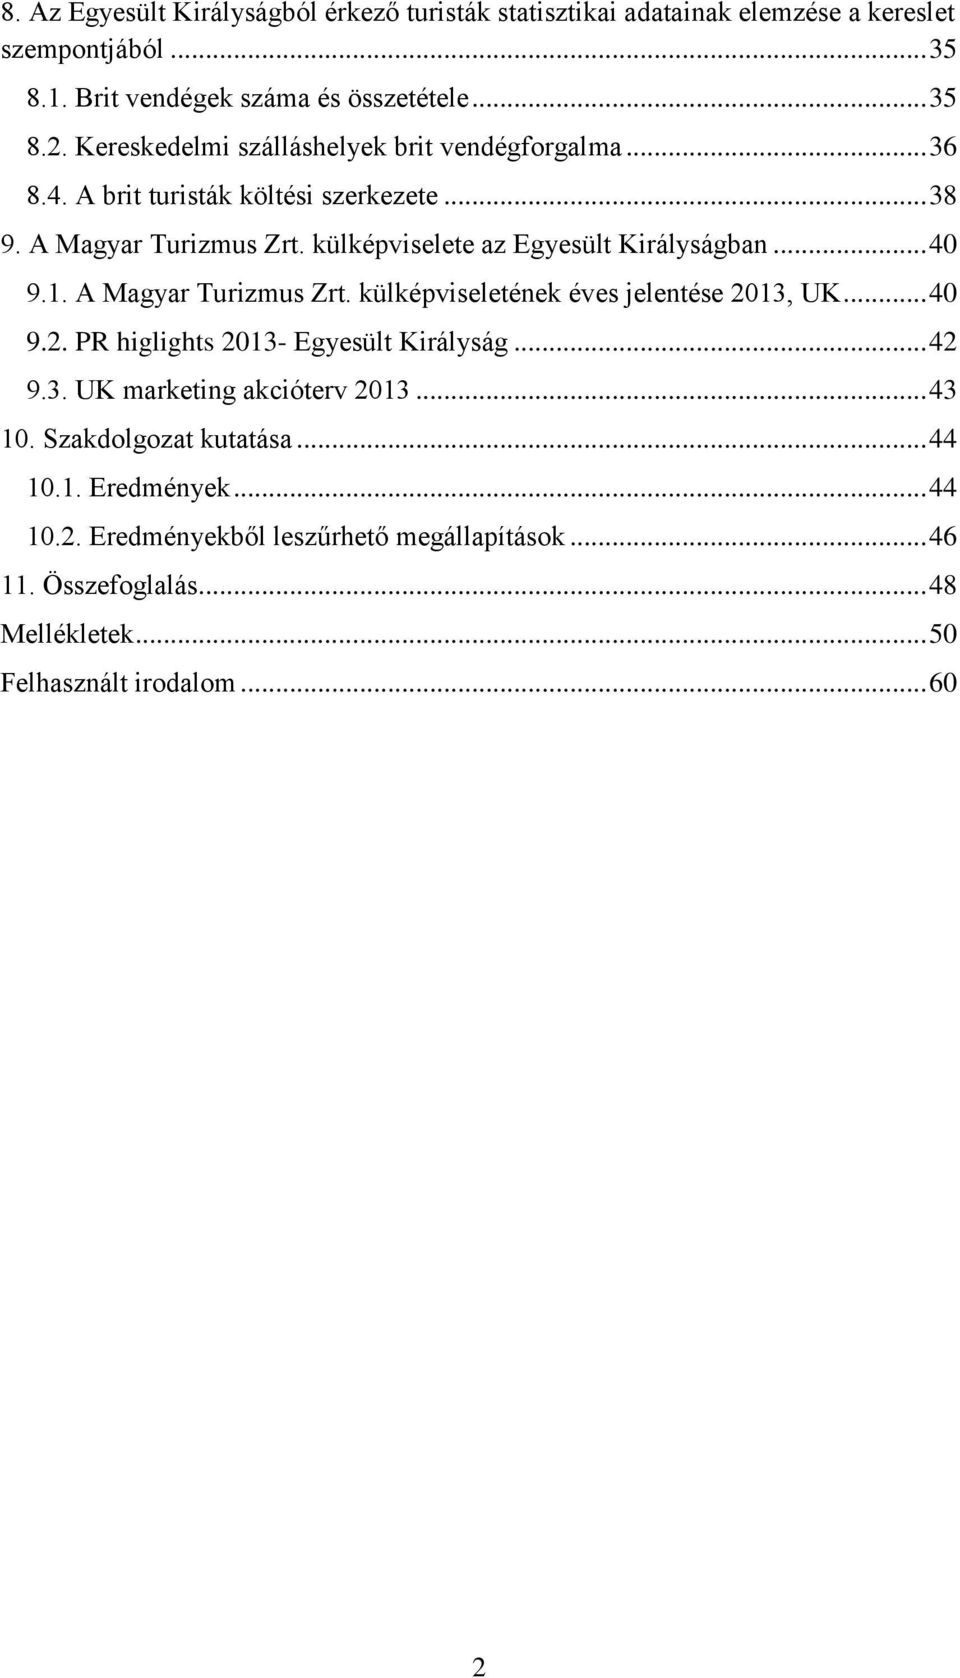 .. 40 9.1. A Magyar Turizmus Zrt. külképviseletének éves jelentése 2013, UK... 40 9.2. PR higlights 2013- Egyesült Királyság... 42 9.3. UK marketing akcióterv 2013.